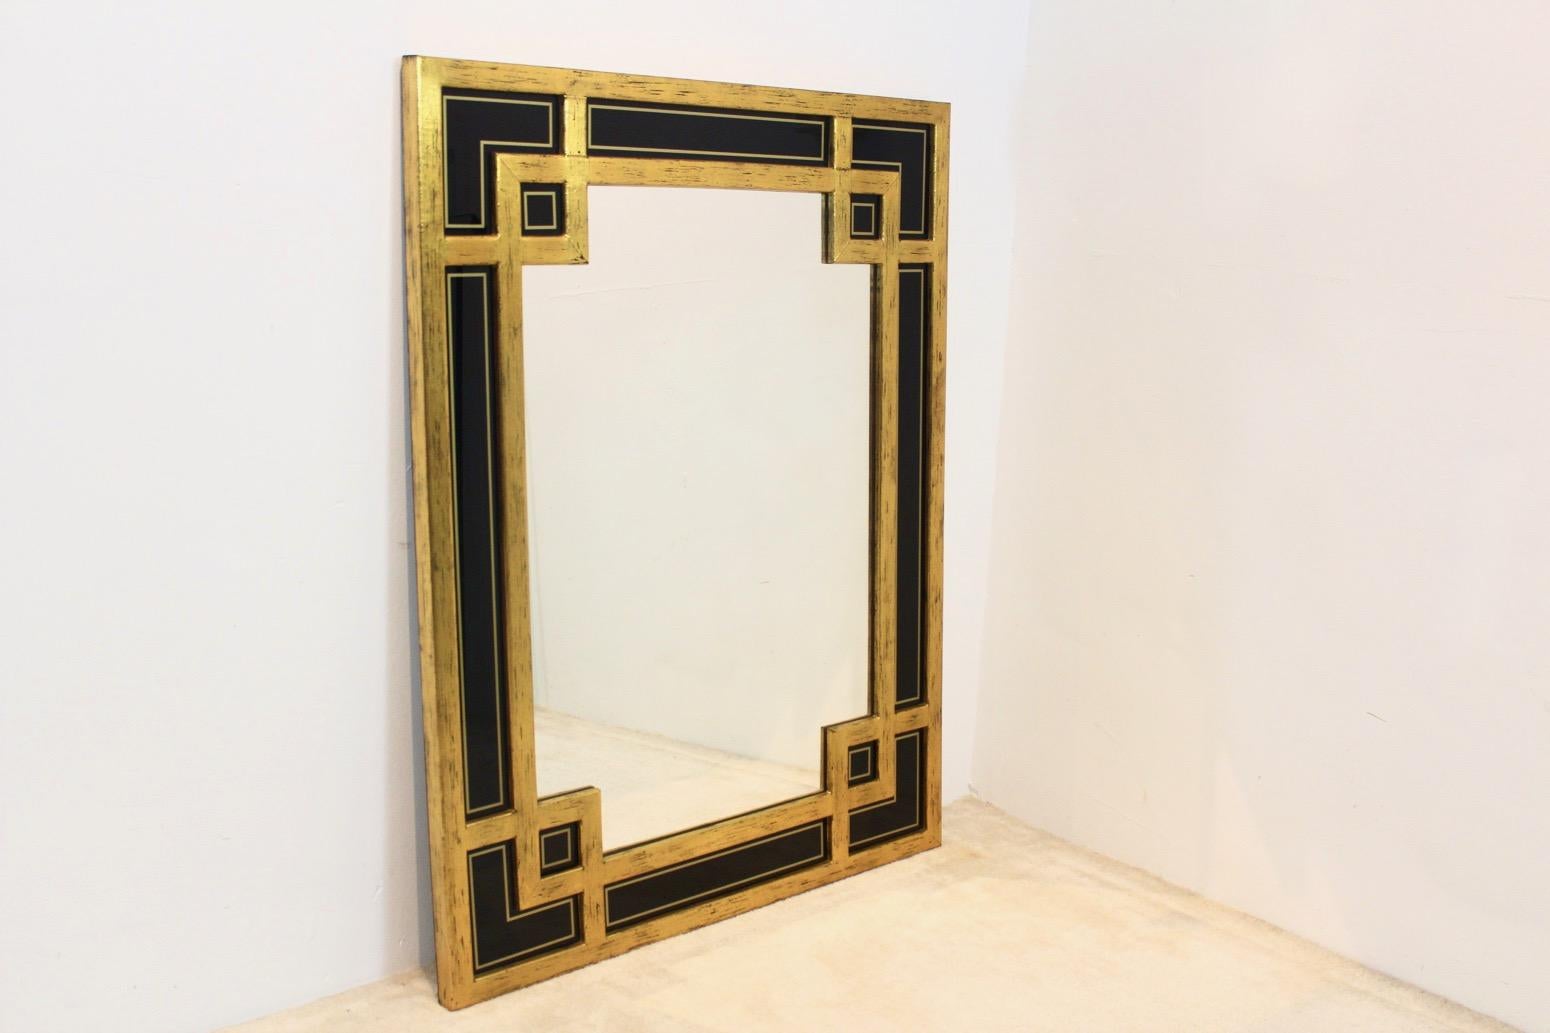 Magnifique grand miroir encadré en bois doré avec un motif graphique sophistiqué. Fabriqué en Belgique par Deknudt (marqué) dans les années 1970. Très élégant avec de magnifiques et uniques panneaux de verre noir insérés sur le côté et des feuilles